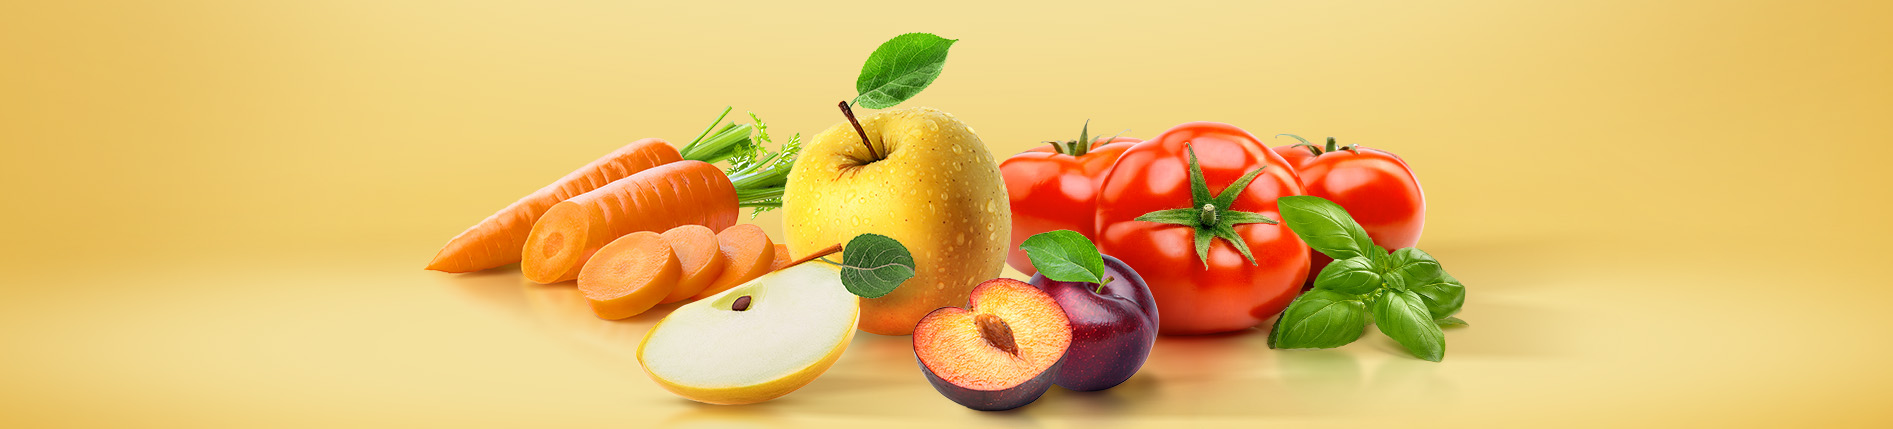 Owoce, warzywa i zioła